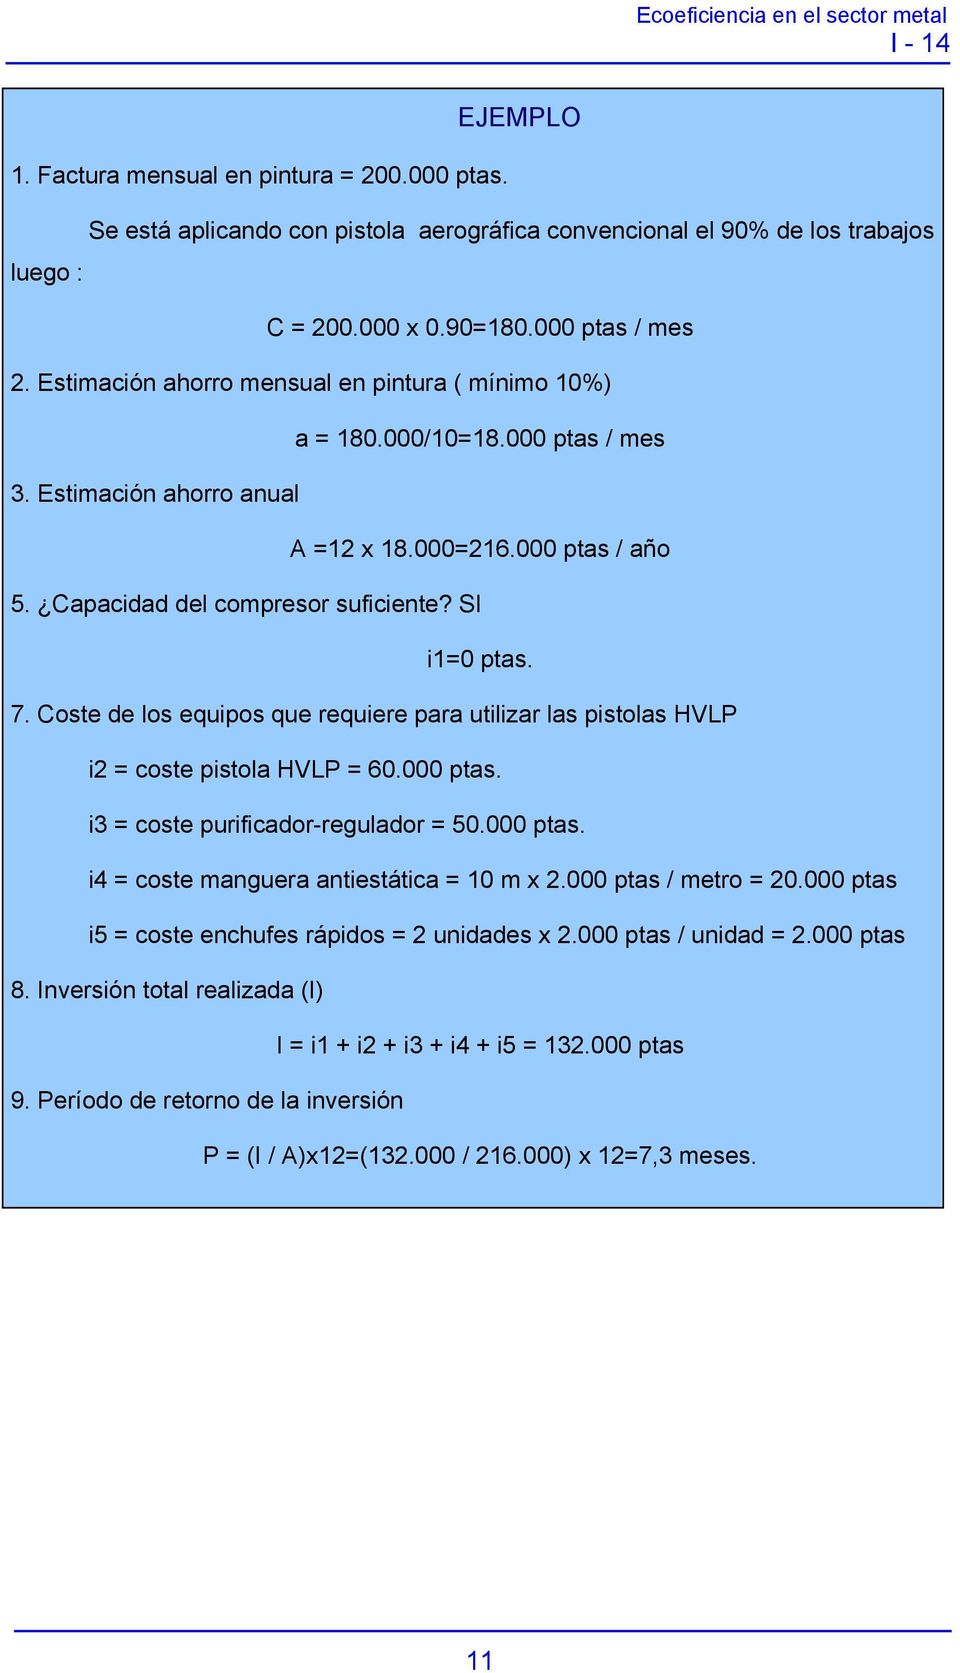 Coste de los equipos que requiere para utilizar las pistolas HVLP i2 = coste pistola HVLP = 60.000 ptas. i3 = coste purificador-regulador = 50.000 ptas. i4 = coste manguera antiestática = 10 m x 2.